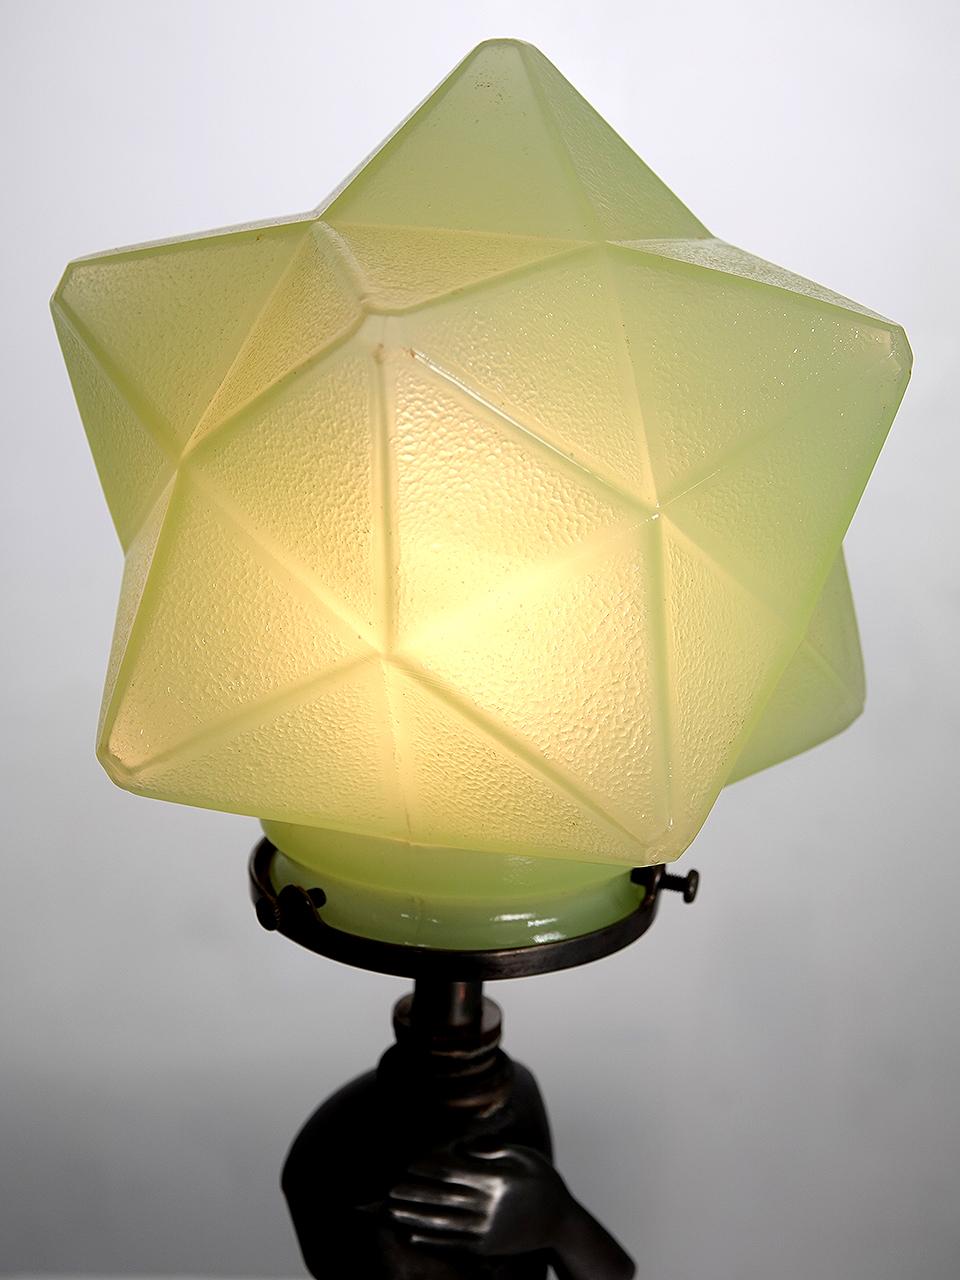 Es ist selten, dass man ein zusammengehöriges Paar von Deco-Lampen findet. Diese haben ein einzigartiges Hollywood-Deco-Gefühl. Die Schirme sind aus mintgrünem Kunstglas und haben einen mehrseitigen Starburst. Es könnte auch Uranglas sein... aber